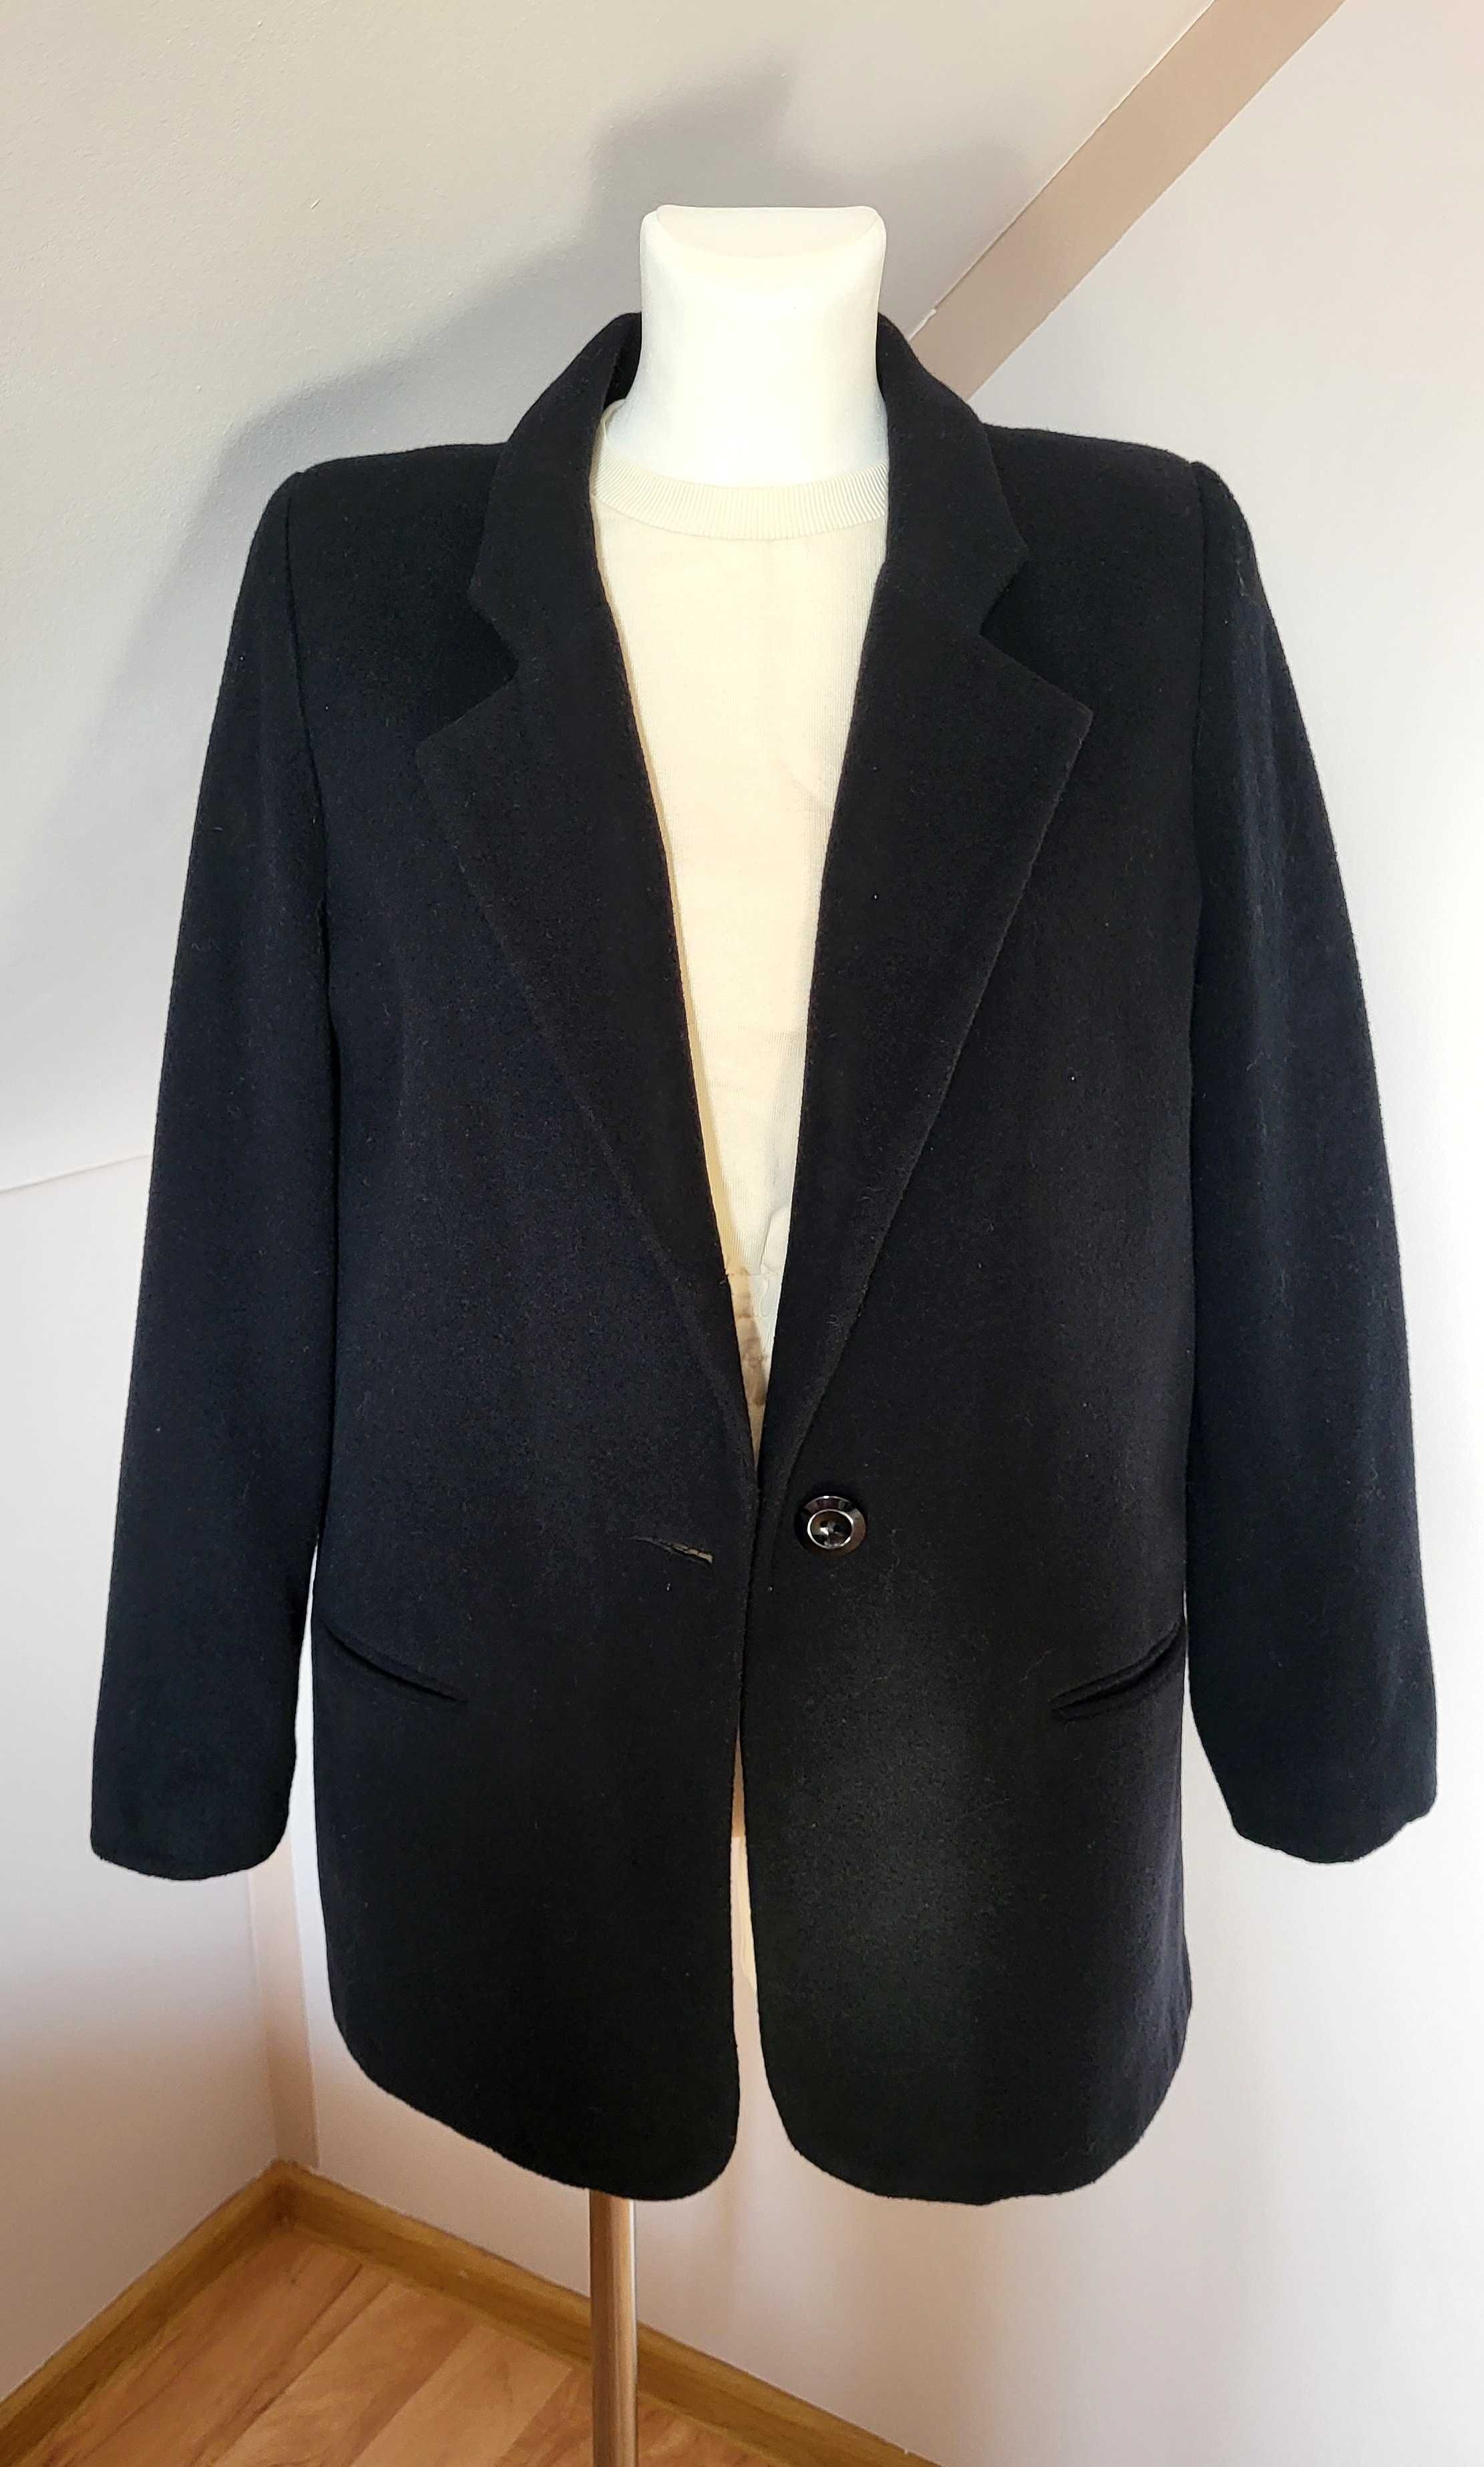 Wełniany płaszcz czarny krótki kaszmir rozmiar L XL